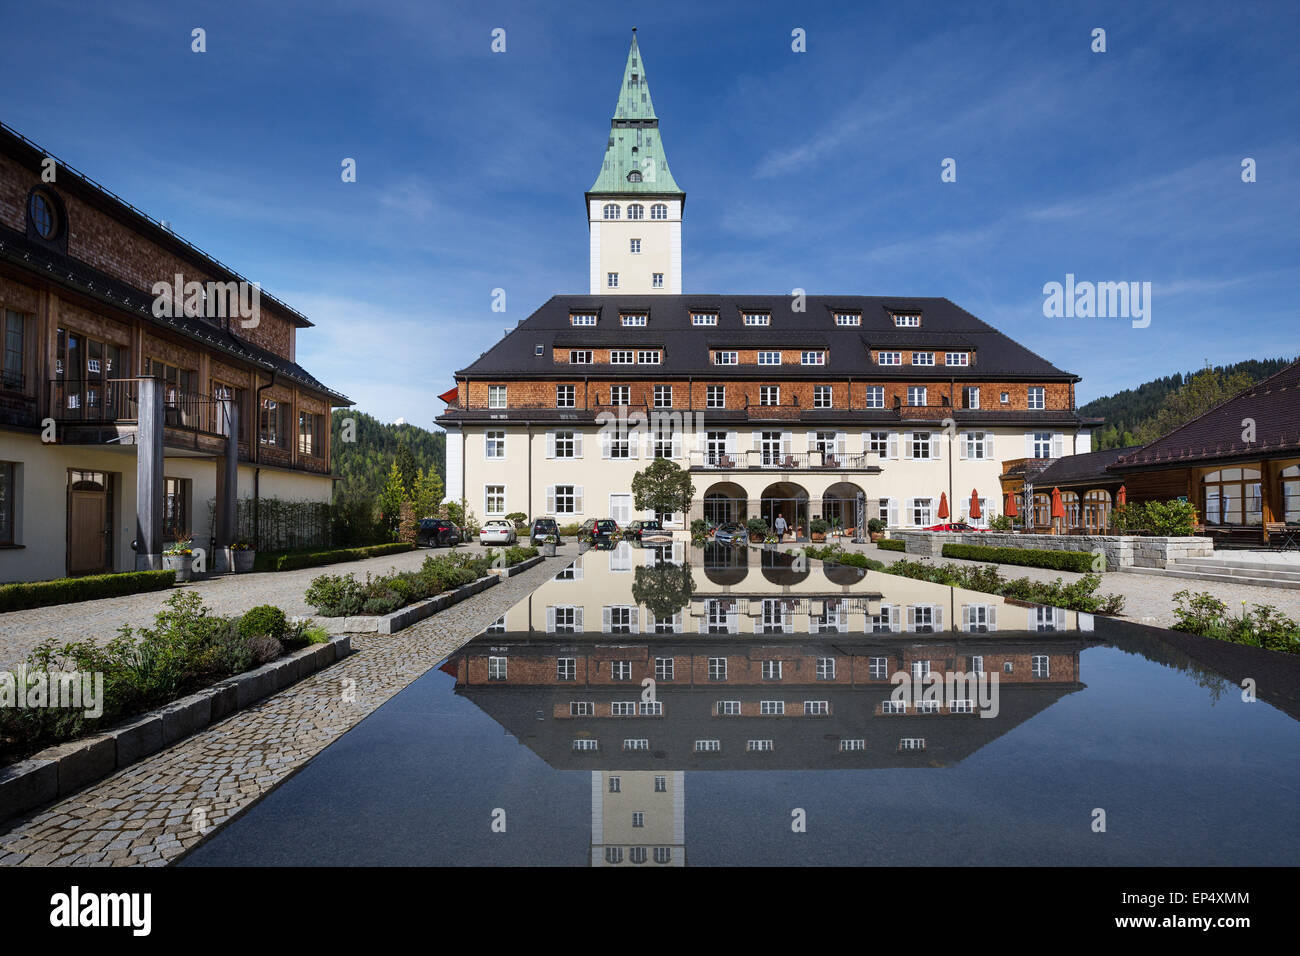 Schloss Elmau Schlosshotel mit Turm spiegelt sich in den Brunnen, Veranstaltungsort des G7-Gipfels in 2015, Klais, Werdenfelser Land Stockfoto